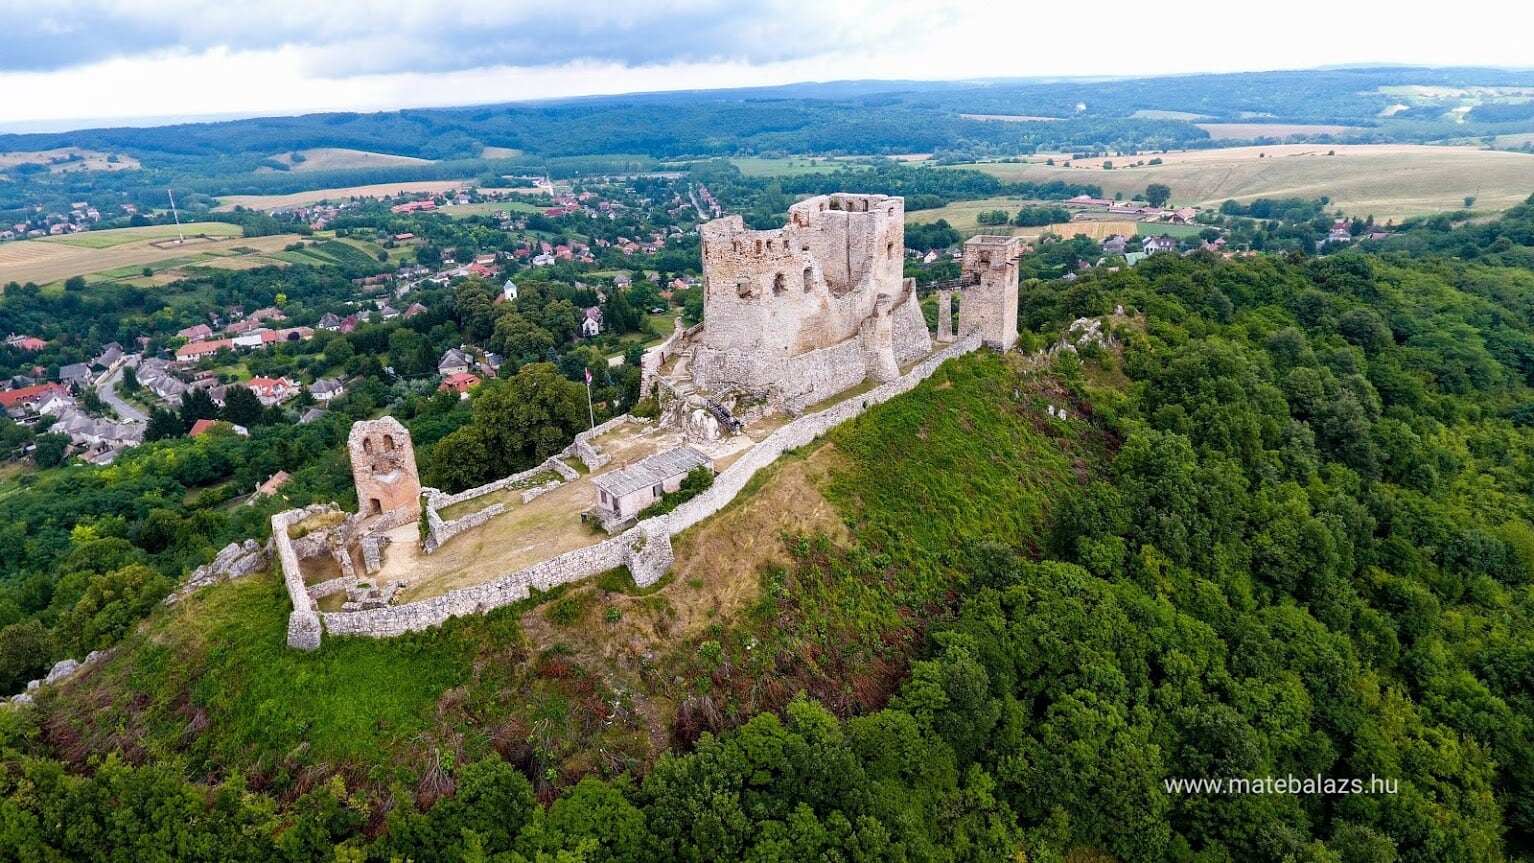  Balaton-felvidék legszebb várai: Cseszneki vár